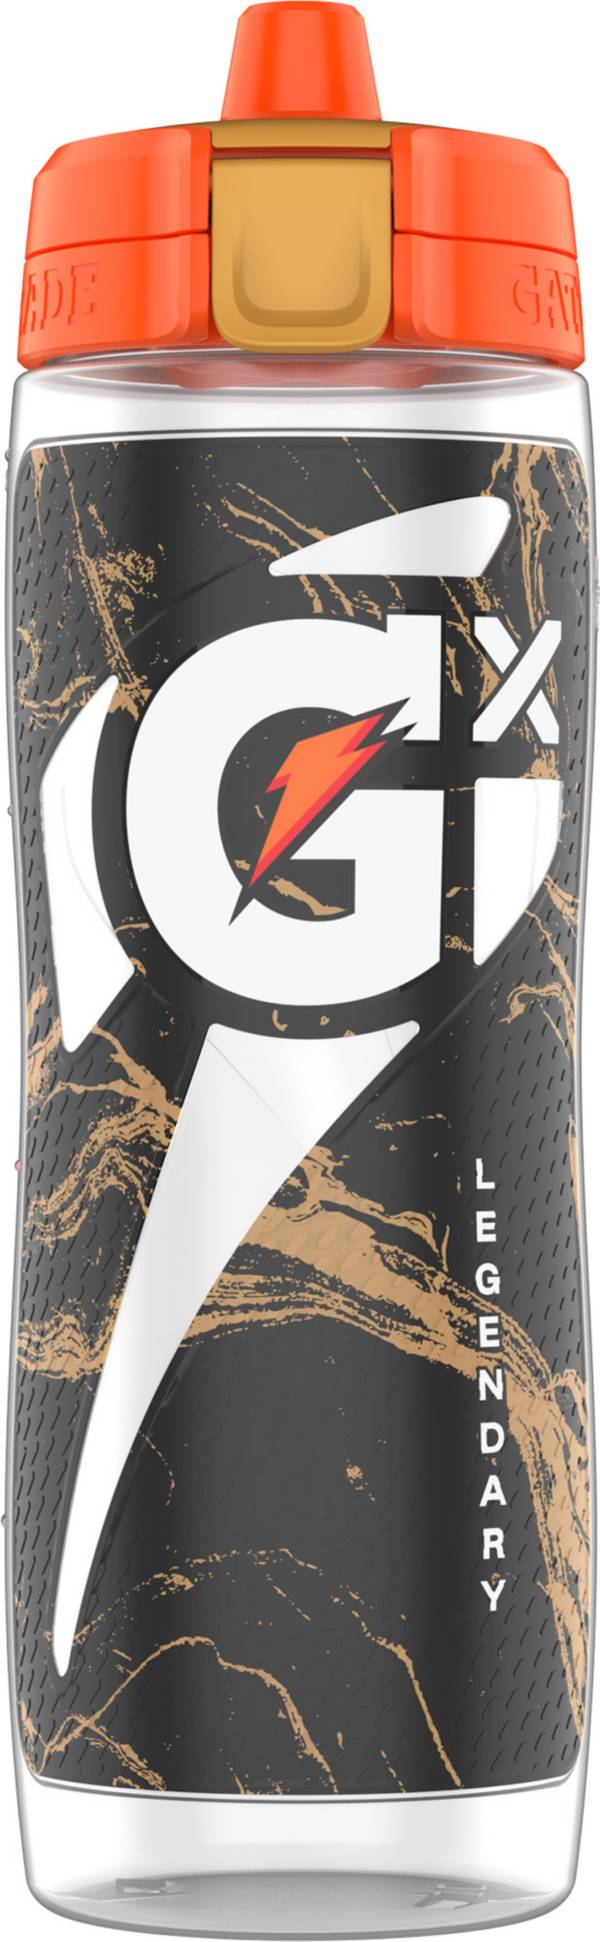 Gatorade 30oz Gx Plastic Water Bottle - Black : Target